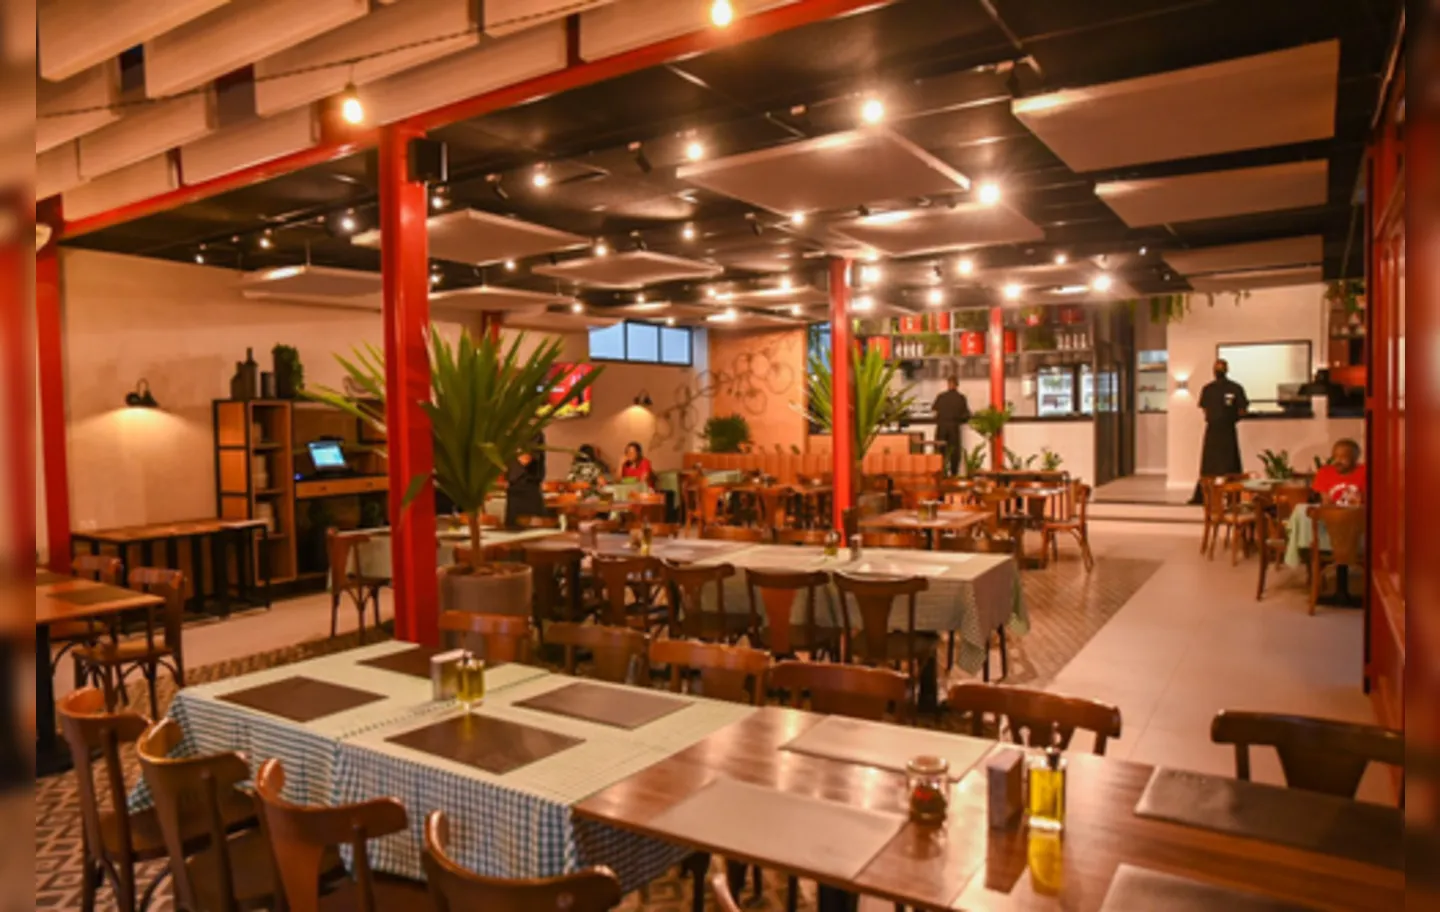 Inaugurada há 30 anos, a Cantina Volpi é referência em culinária italiana em Salvador